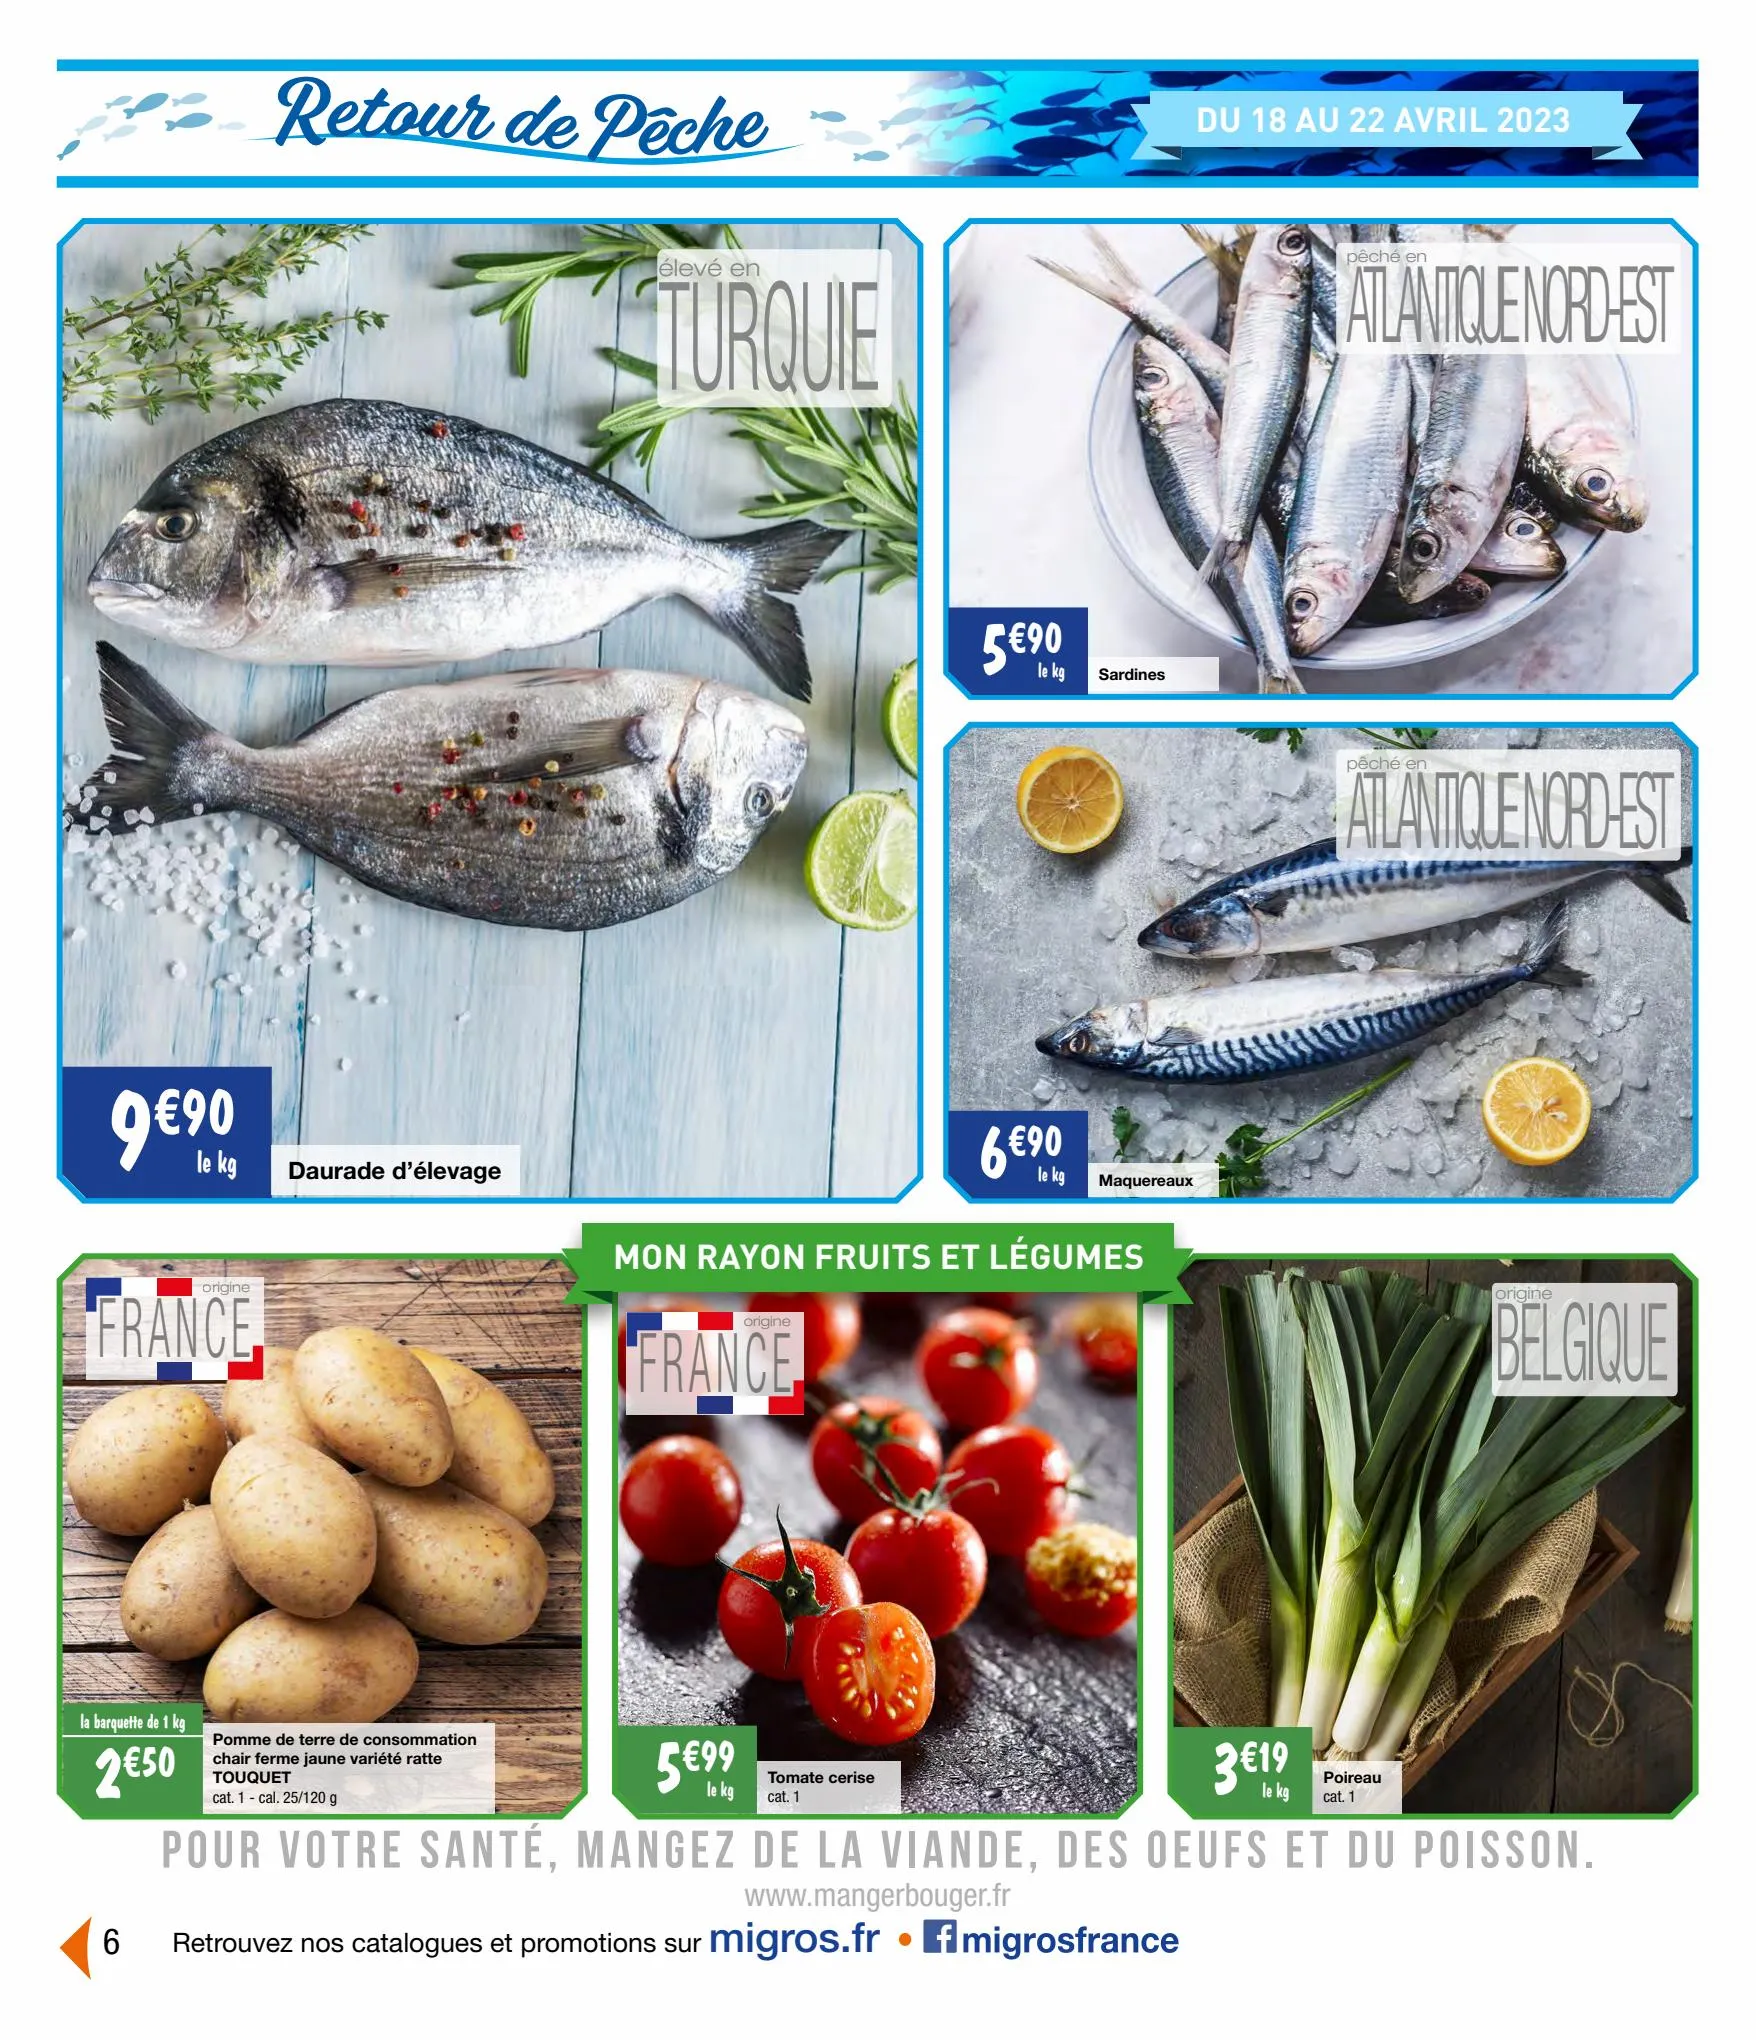 Catalogue Retour de pêche, page 00006